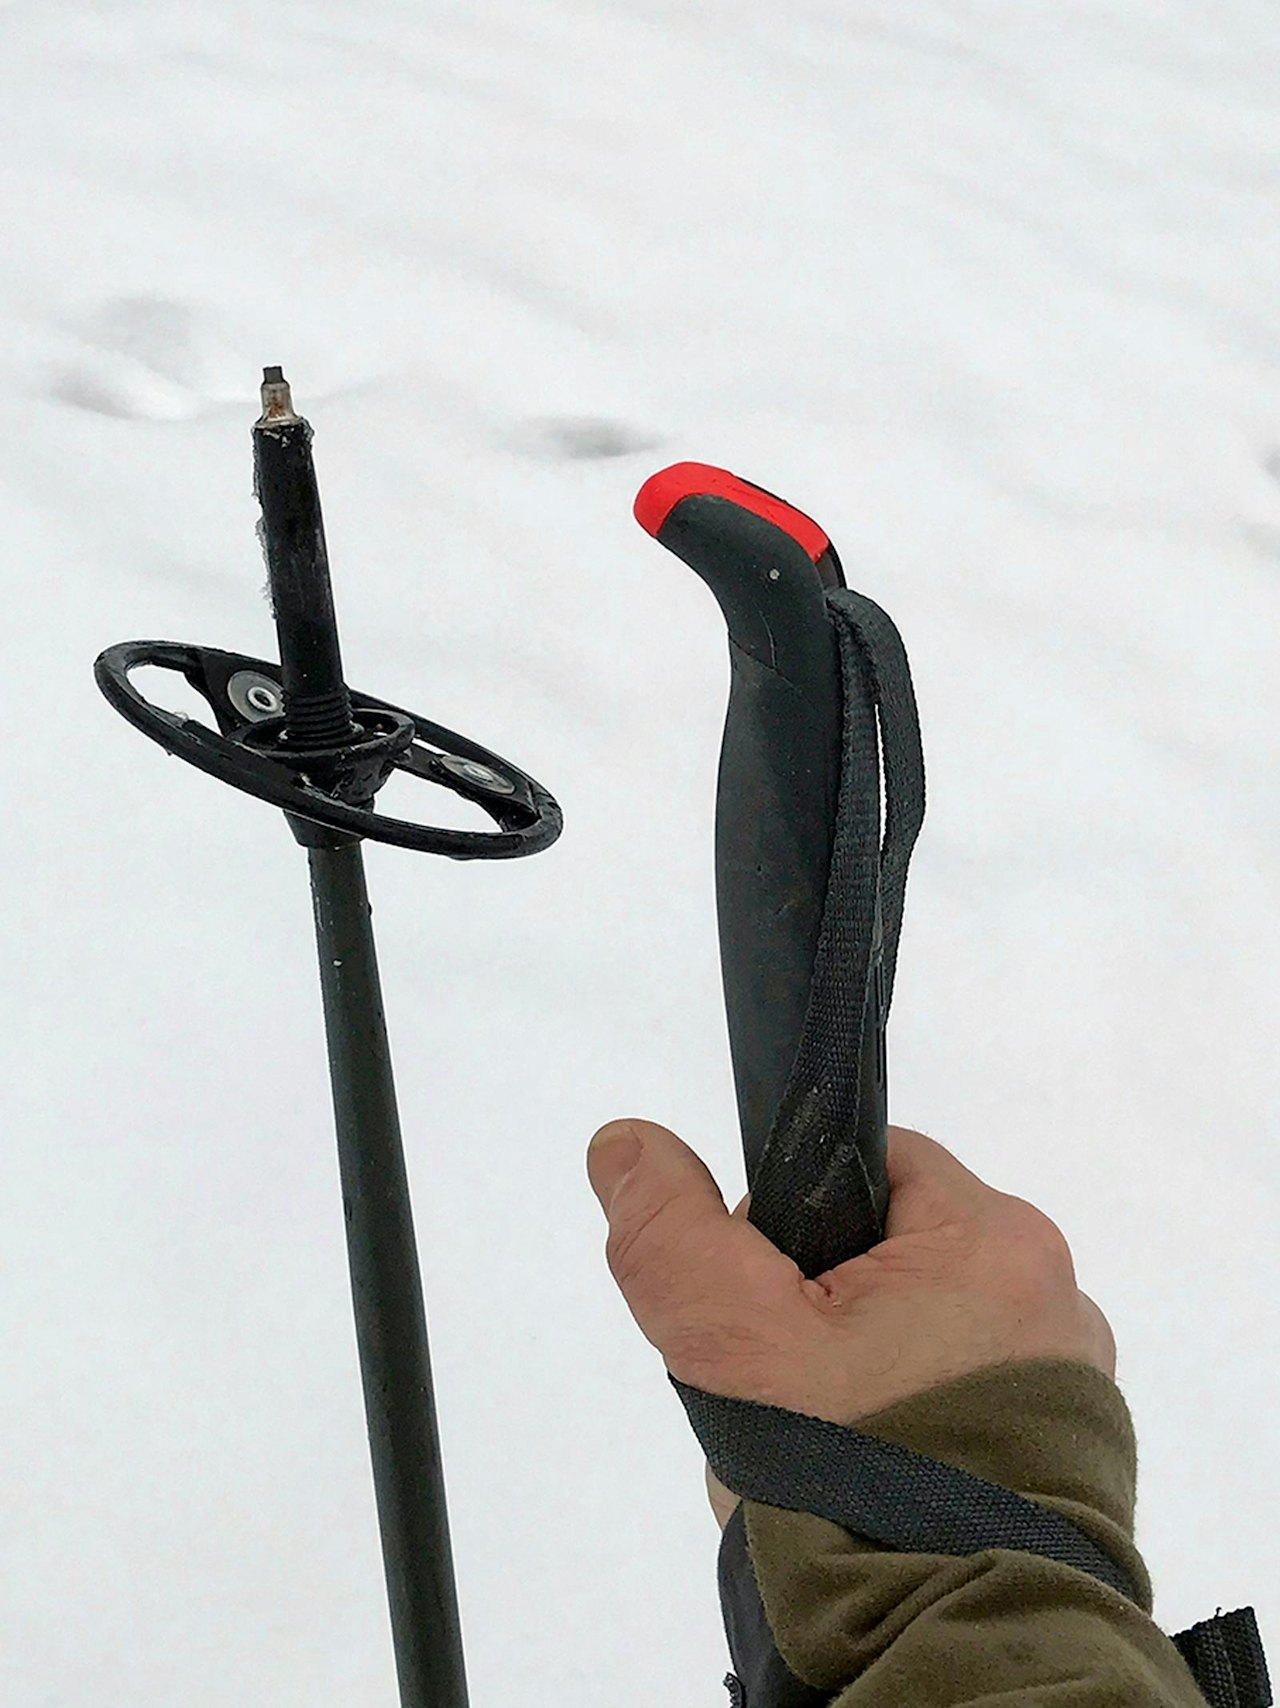 Åsnes Ingstad Alloy Pole fjellskistaver til test i snøen